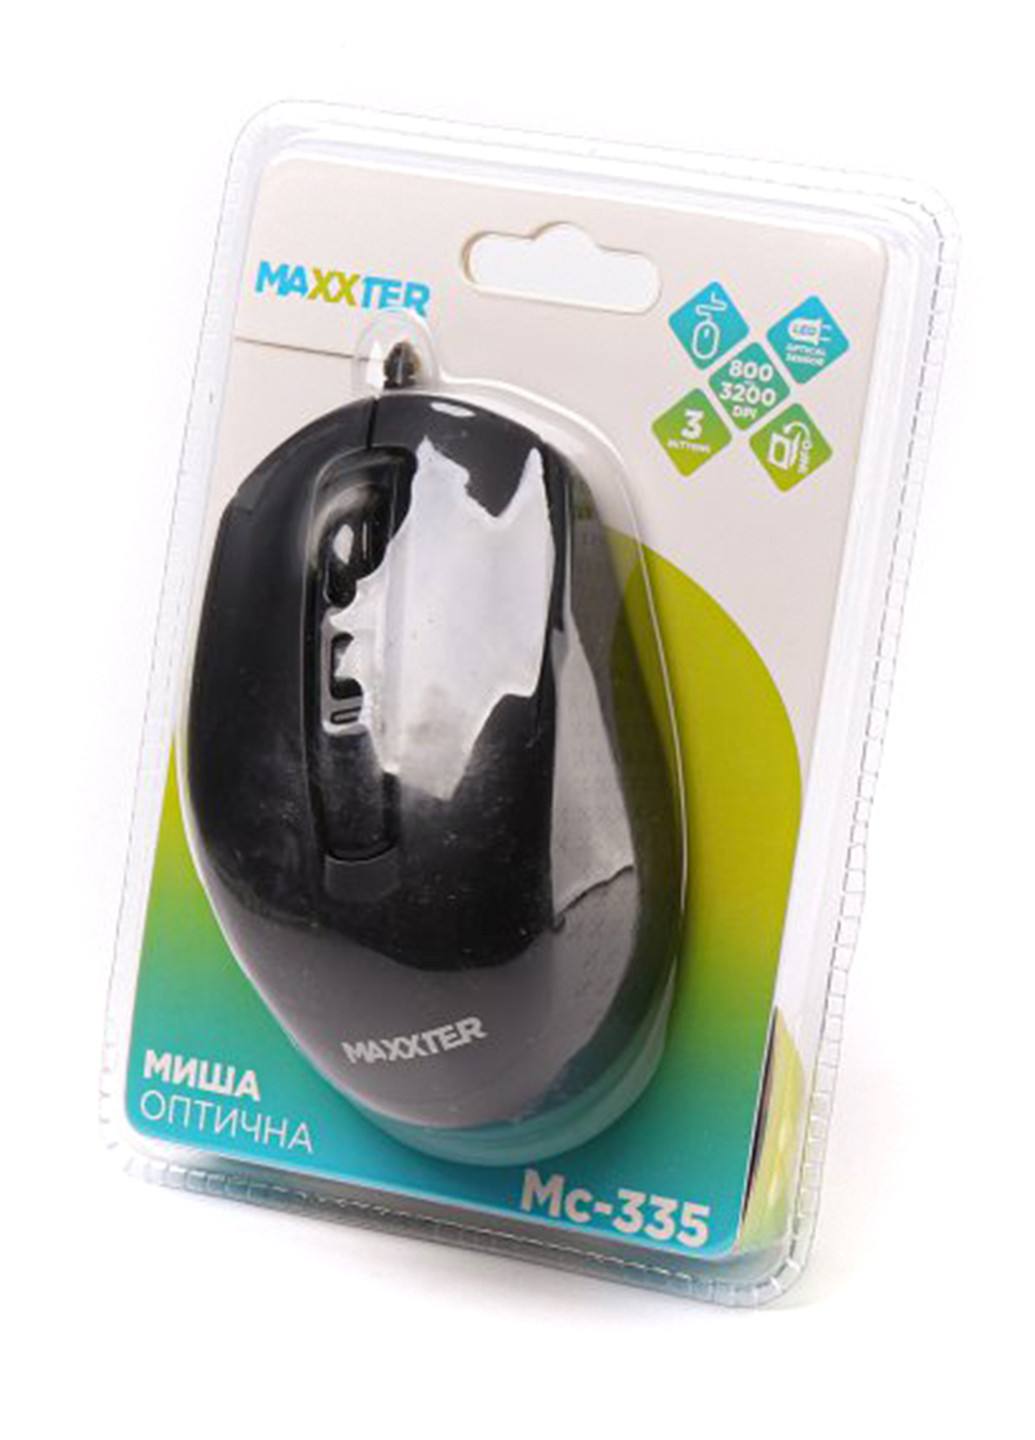 Мышь оптическая Maxxter mc-335 (138100197)